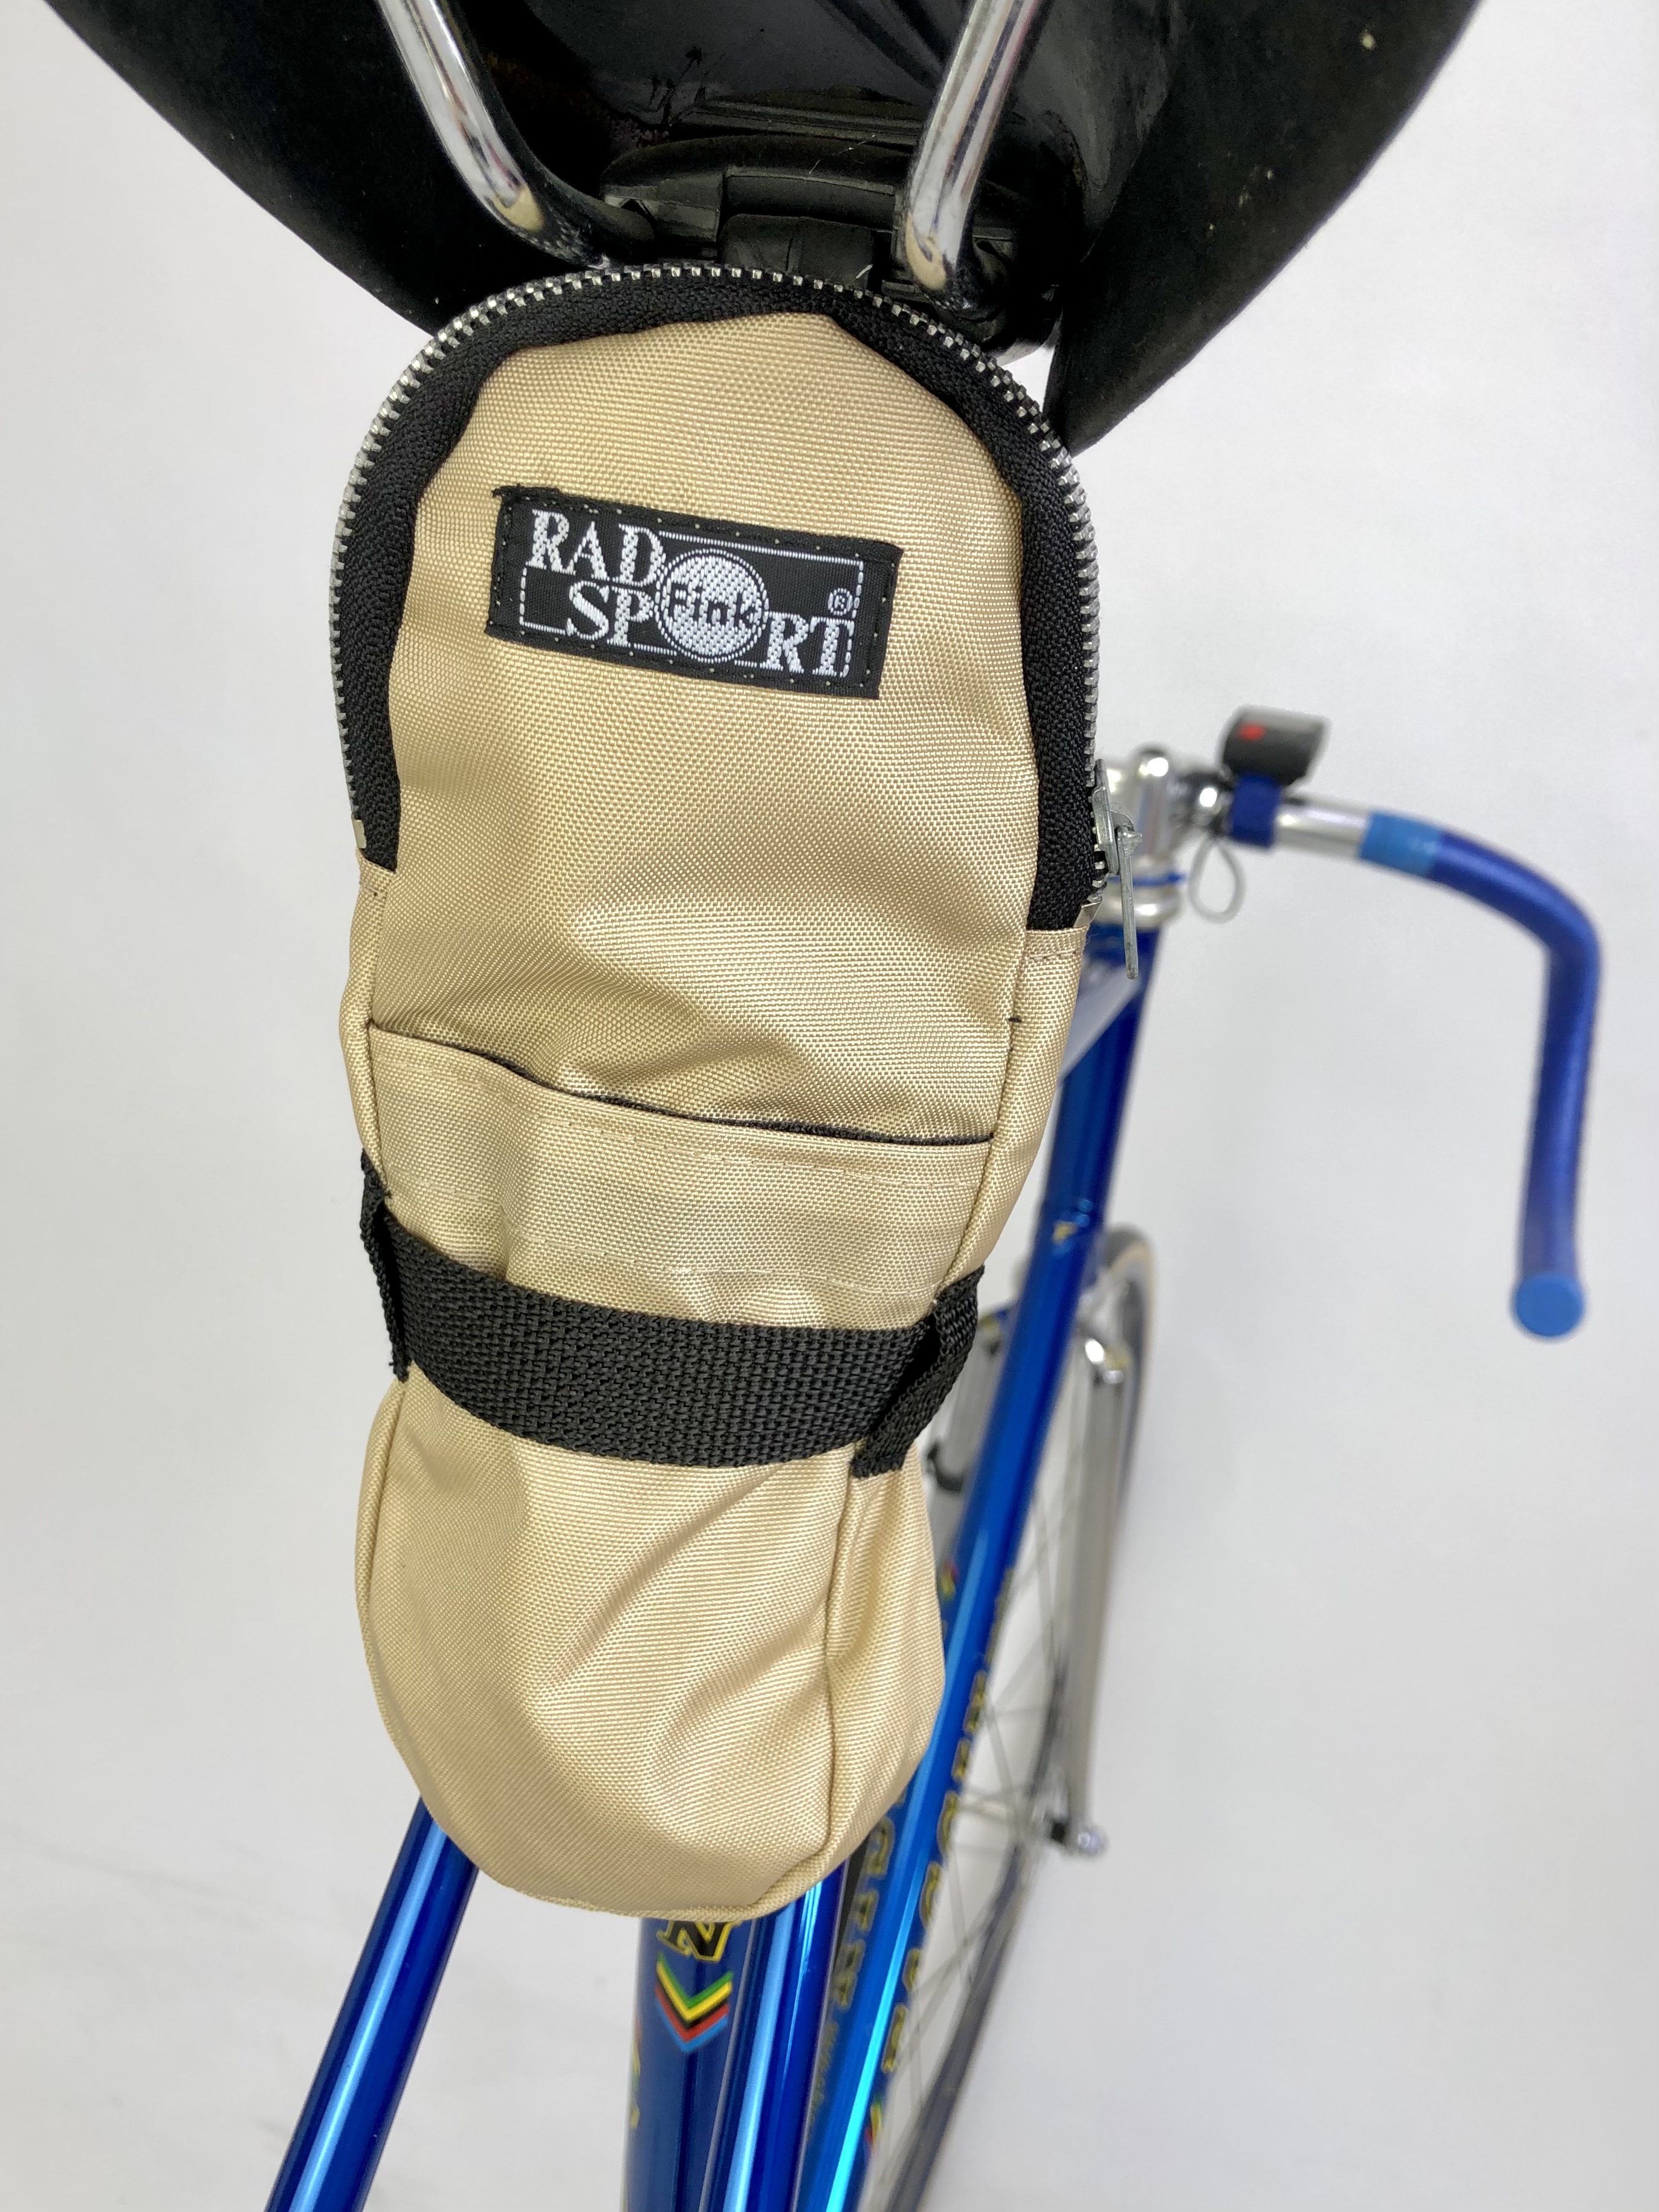 Bisaccia borsa per copertoni bici da corsa nylon beige crema